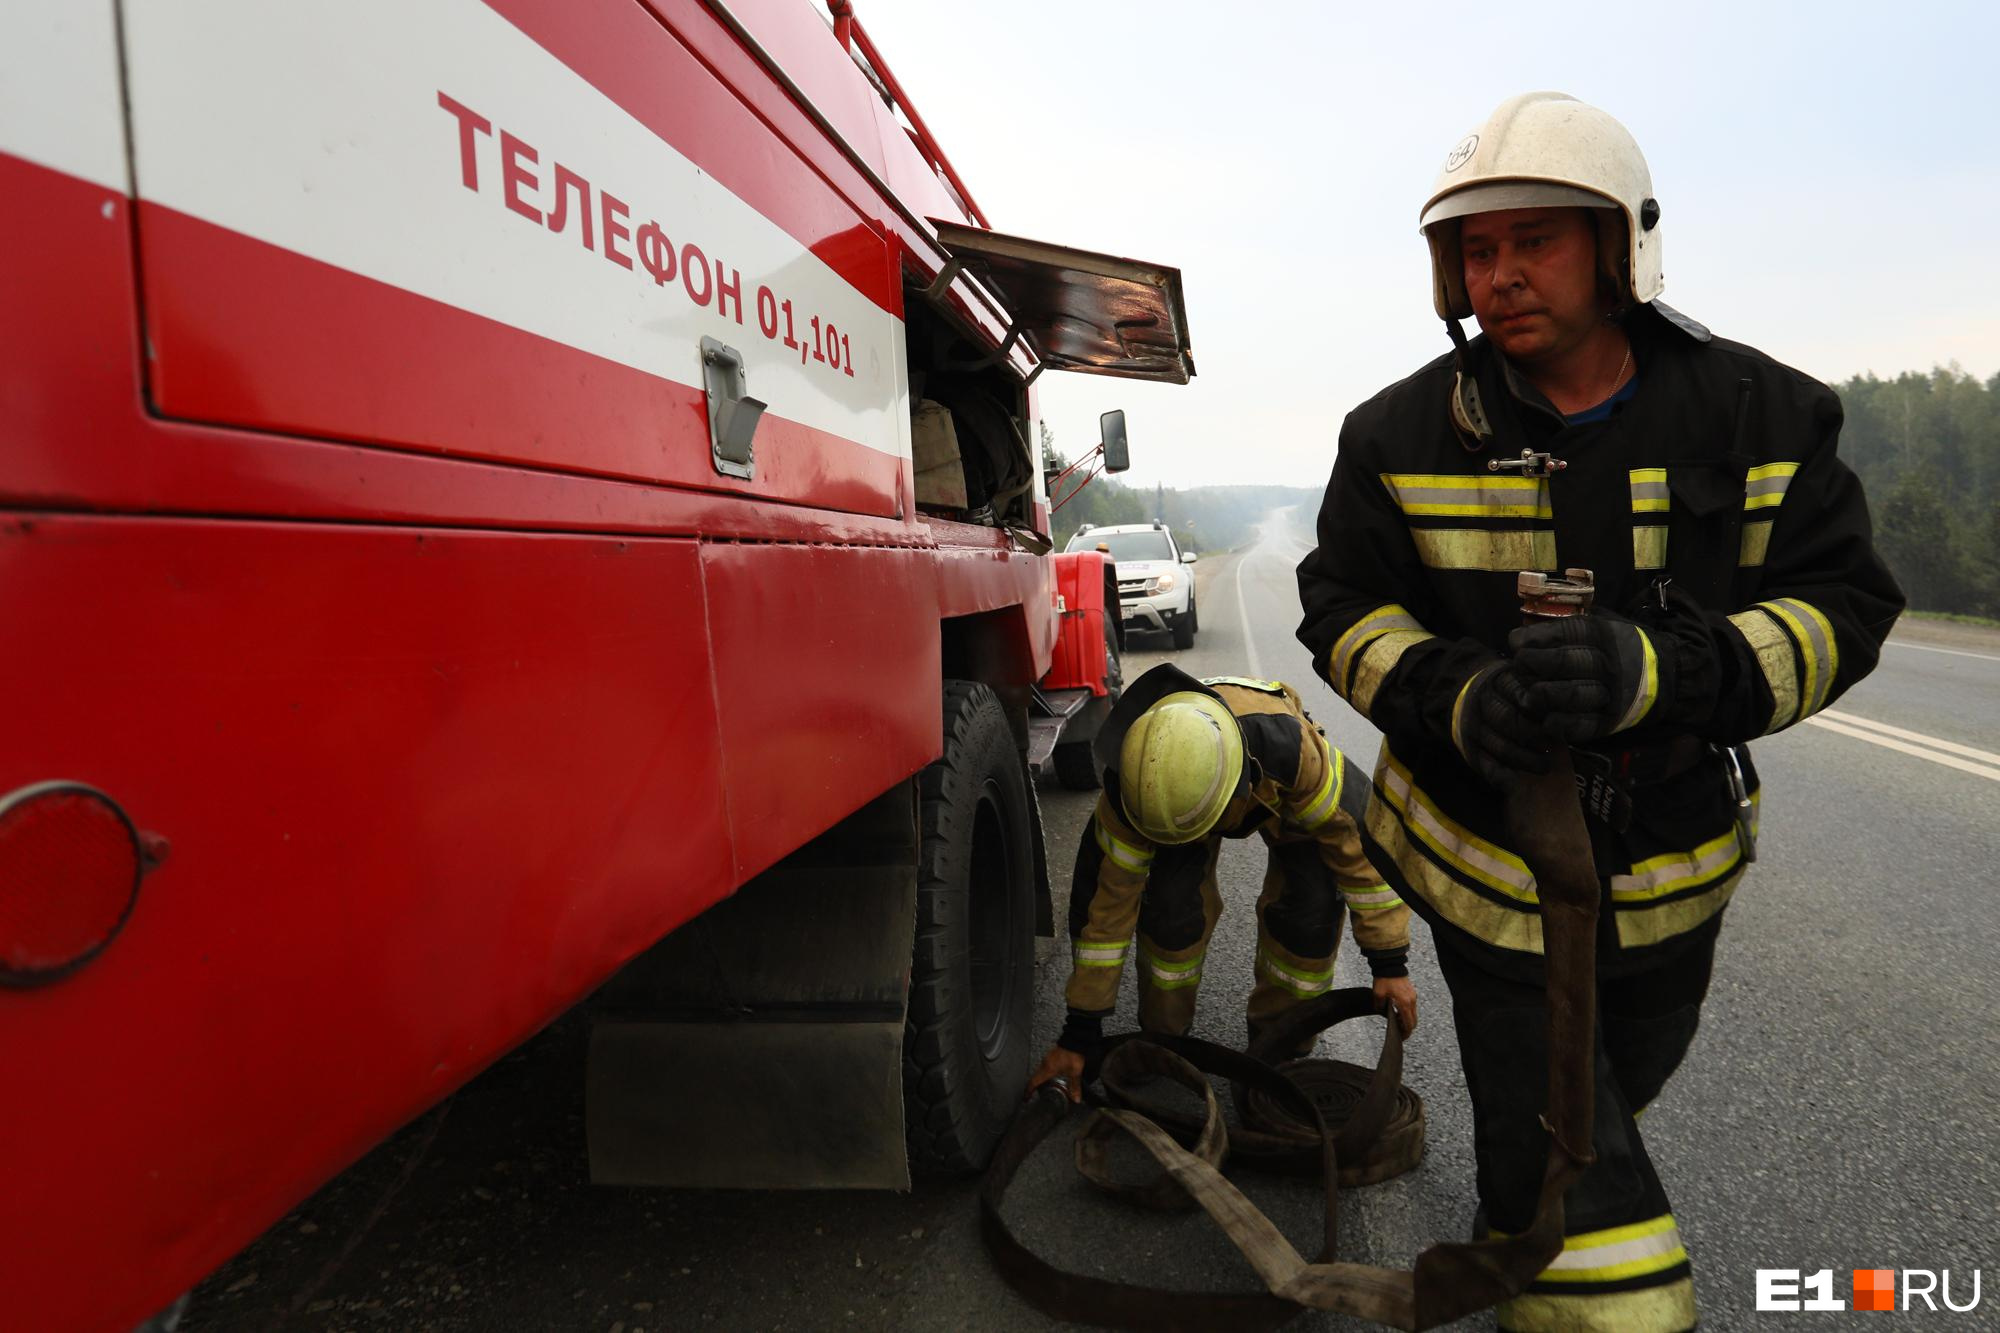 Администрация Балея обеспокоена увольнениями из пожарной части